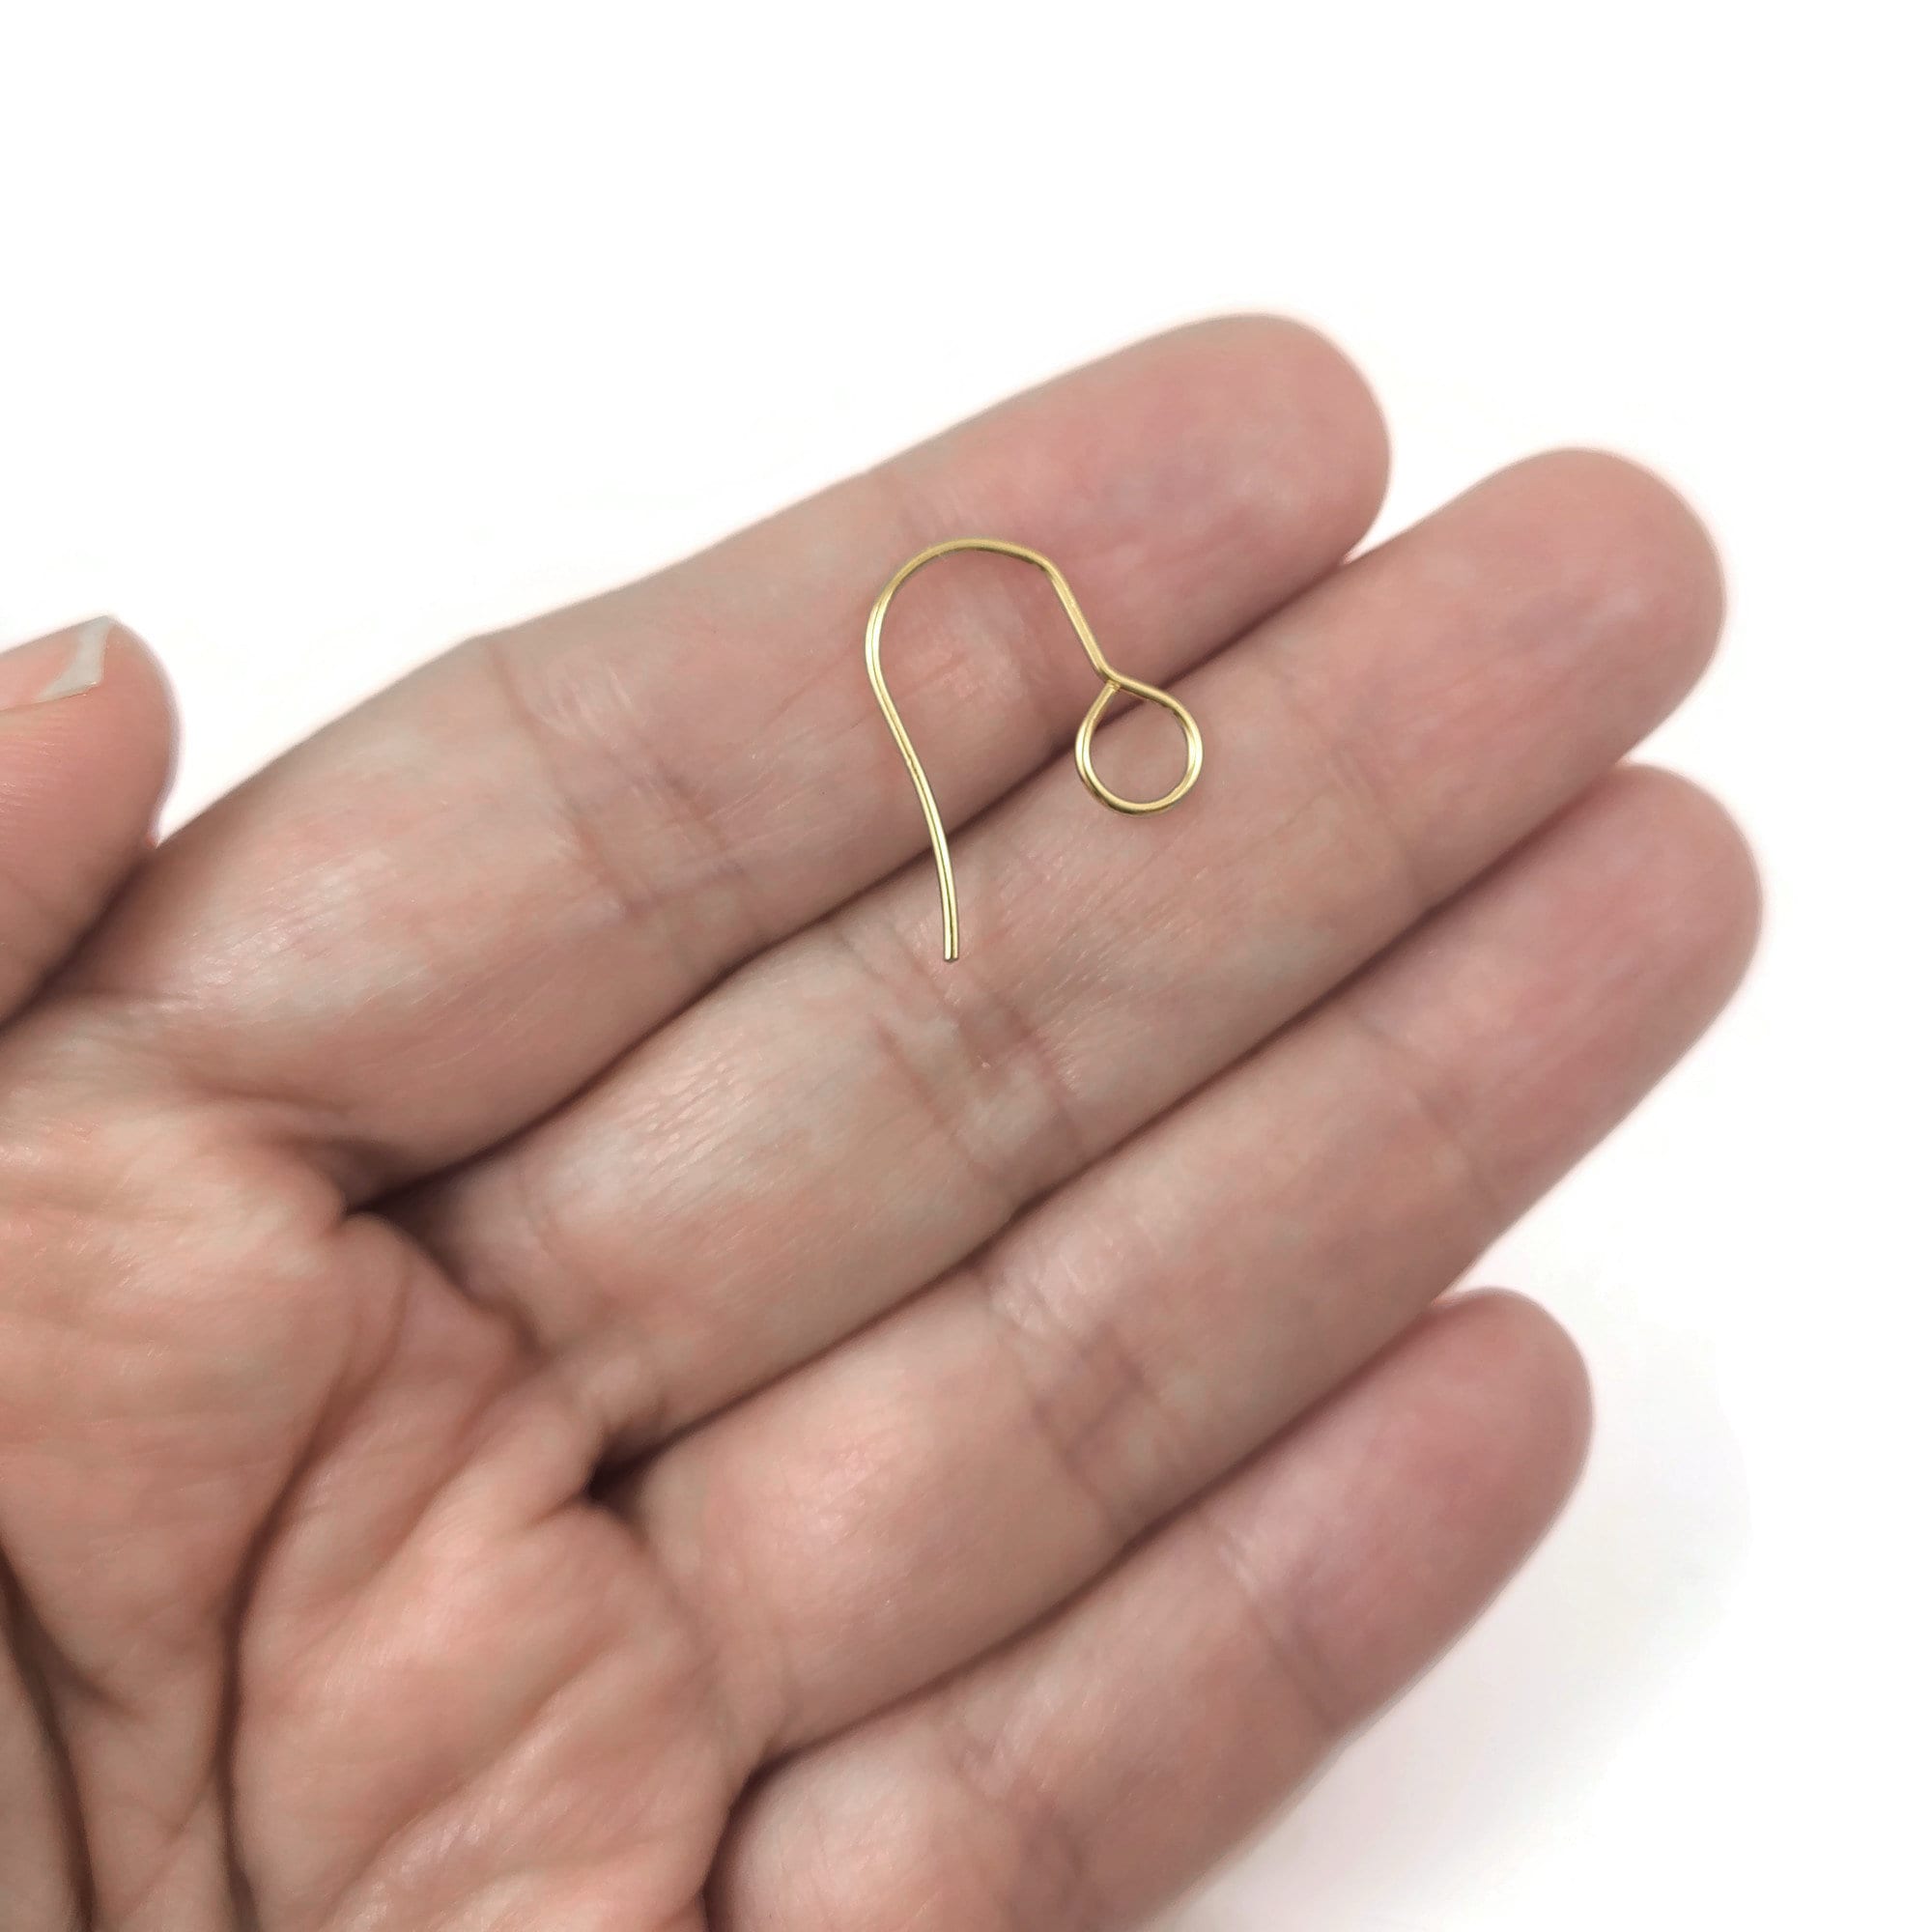 50pcs/lot 9 Styles Steel Earring Hooks Findings Not Allergic Ear Hook  Earrings Clasps For Jewelry Making DIY Earwire Supplies